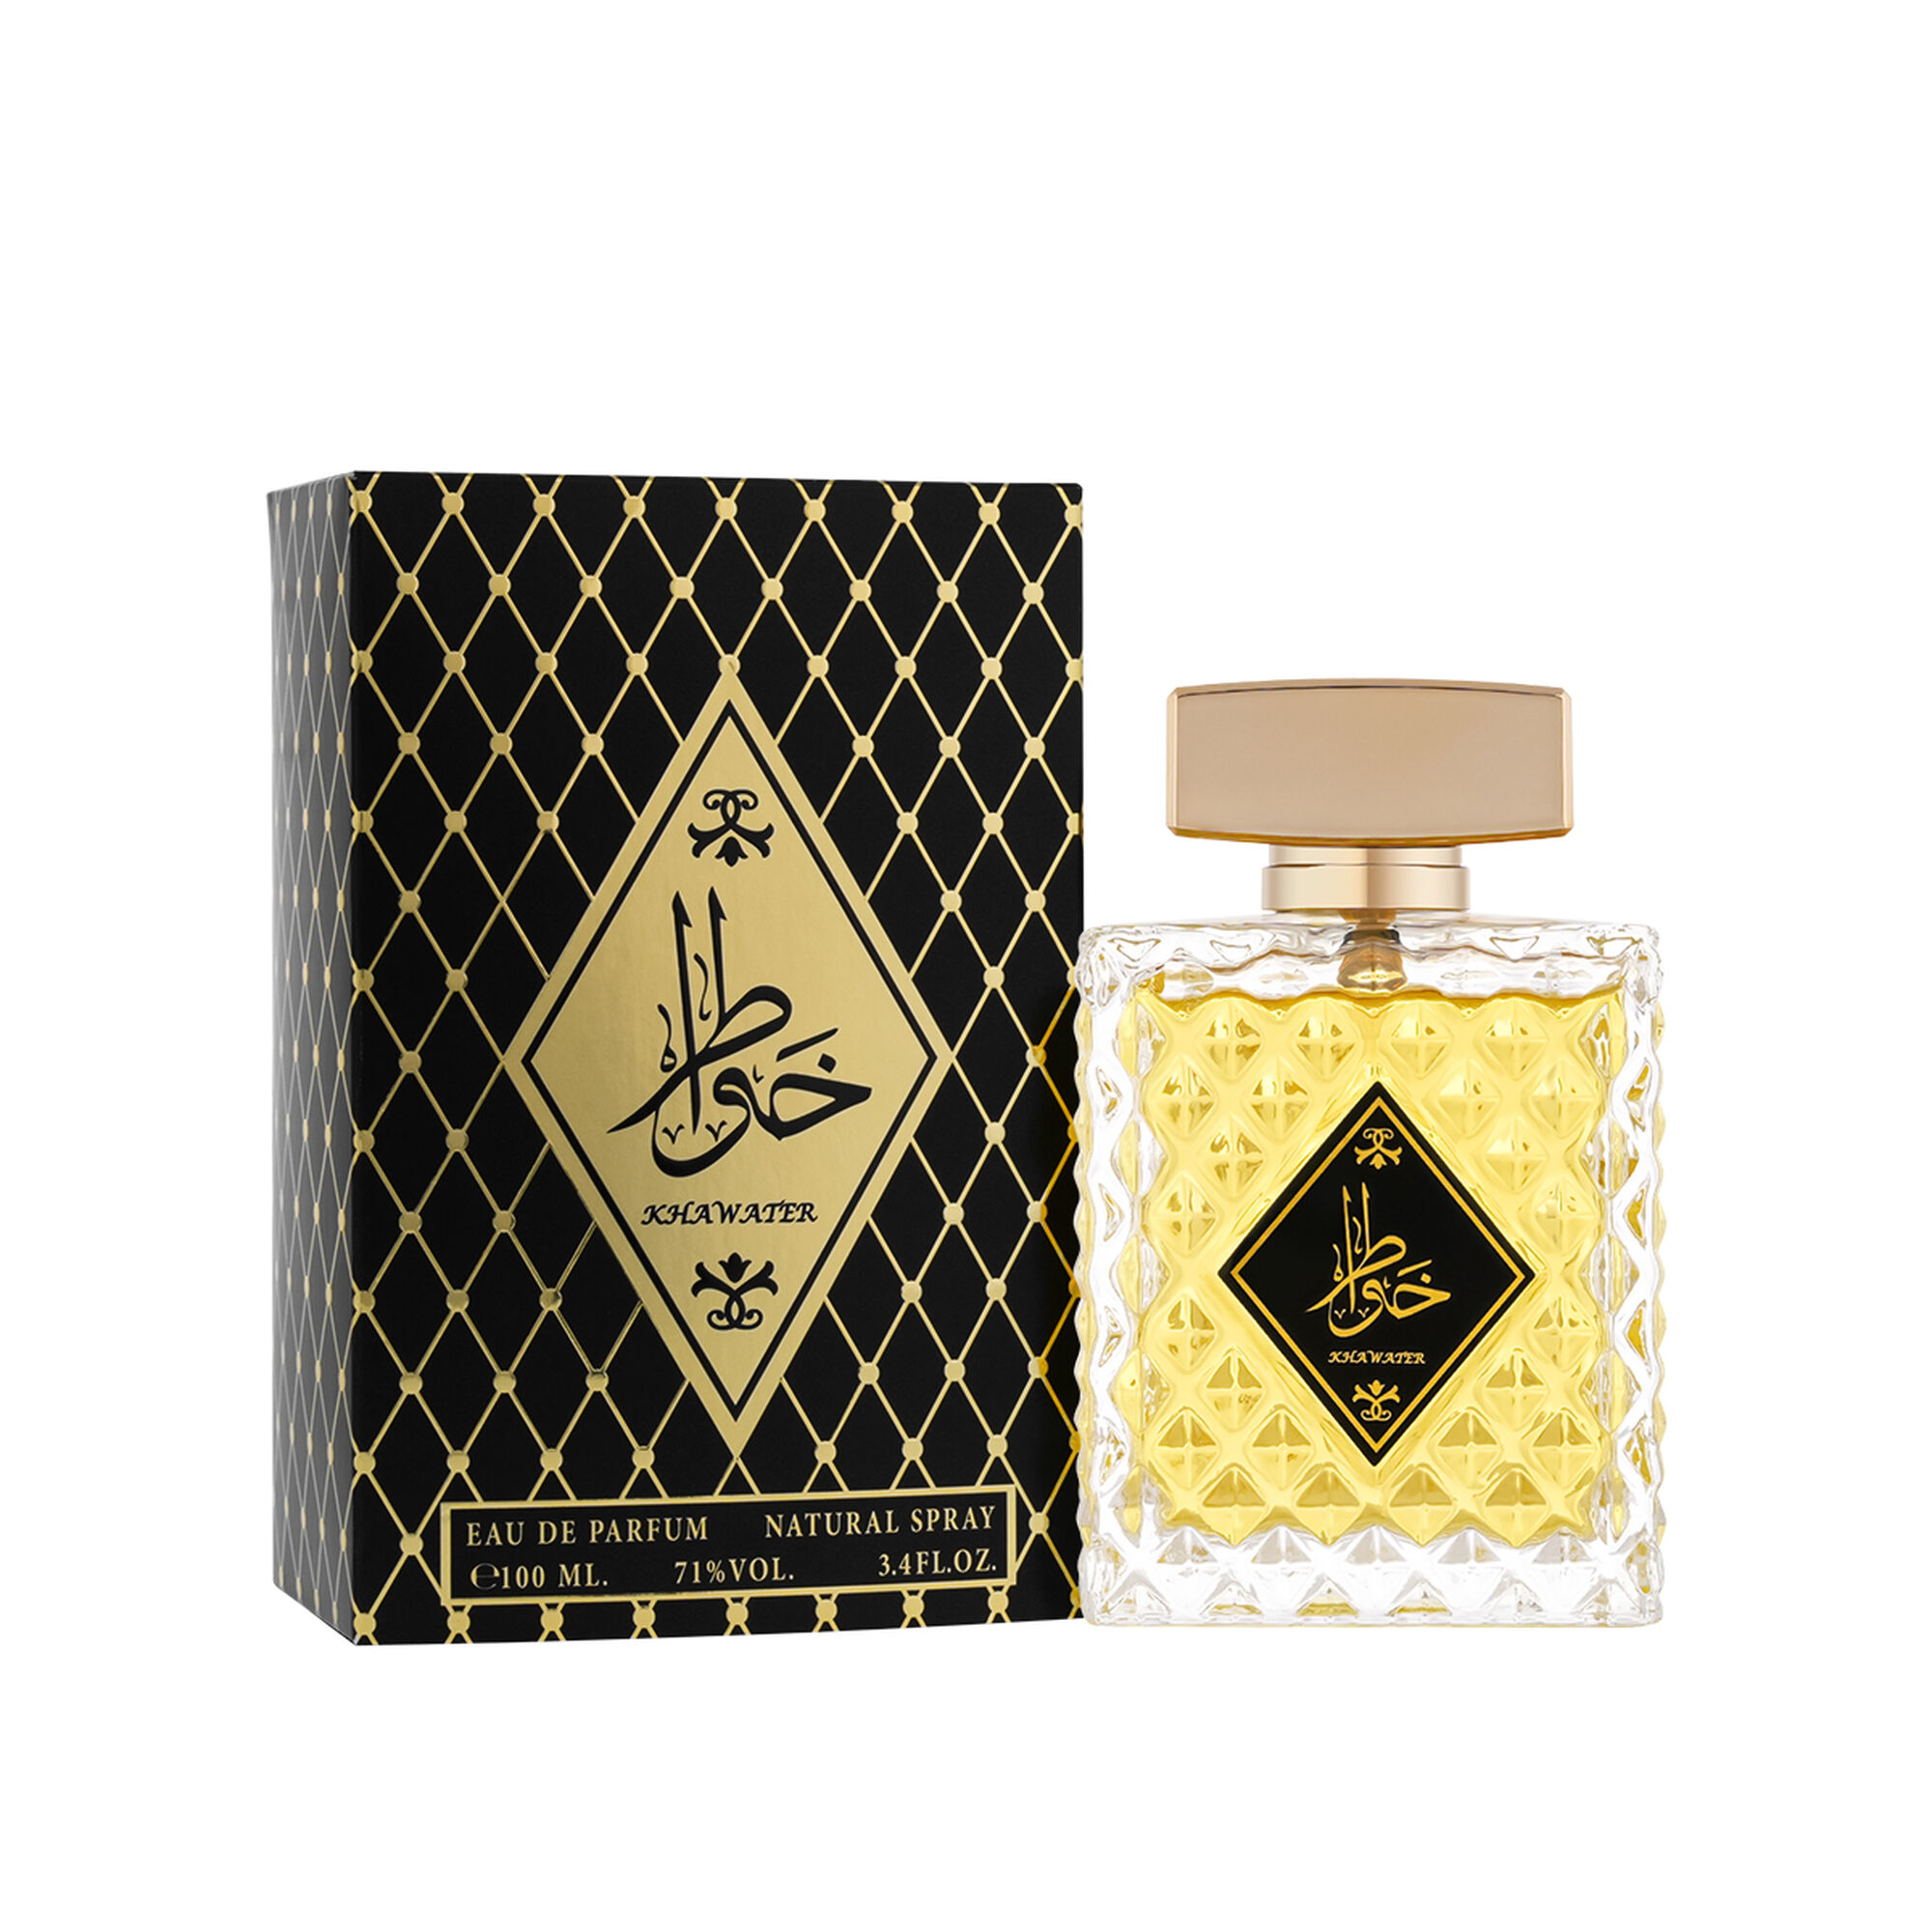 Khawater perfume